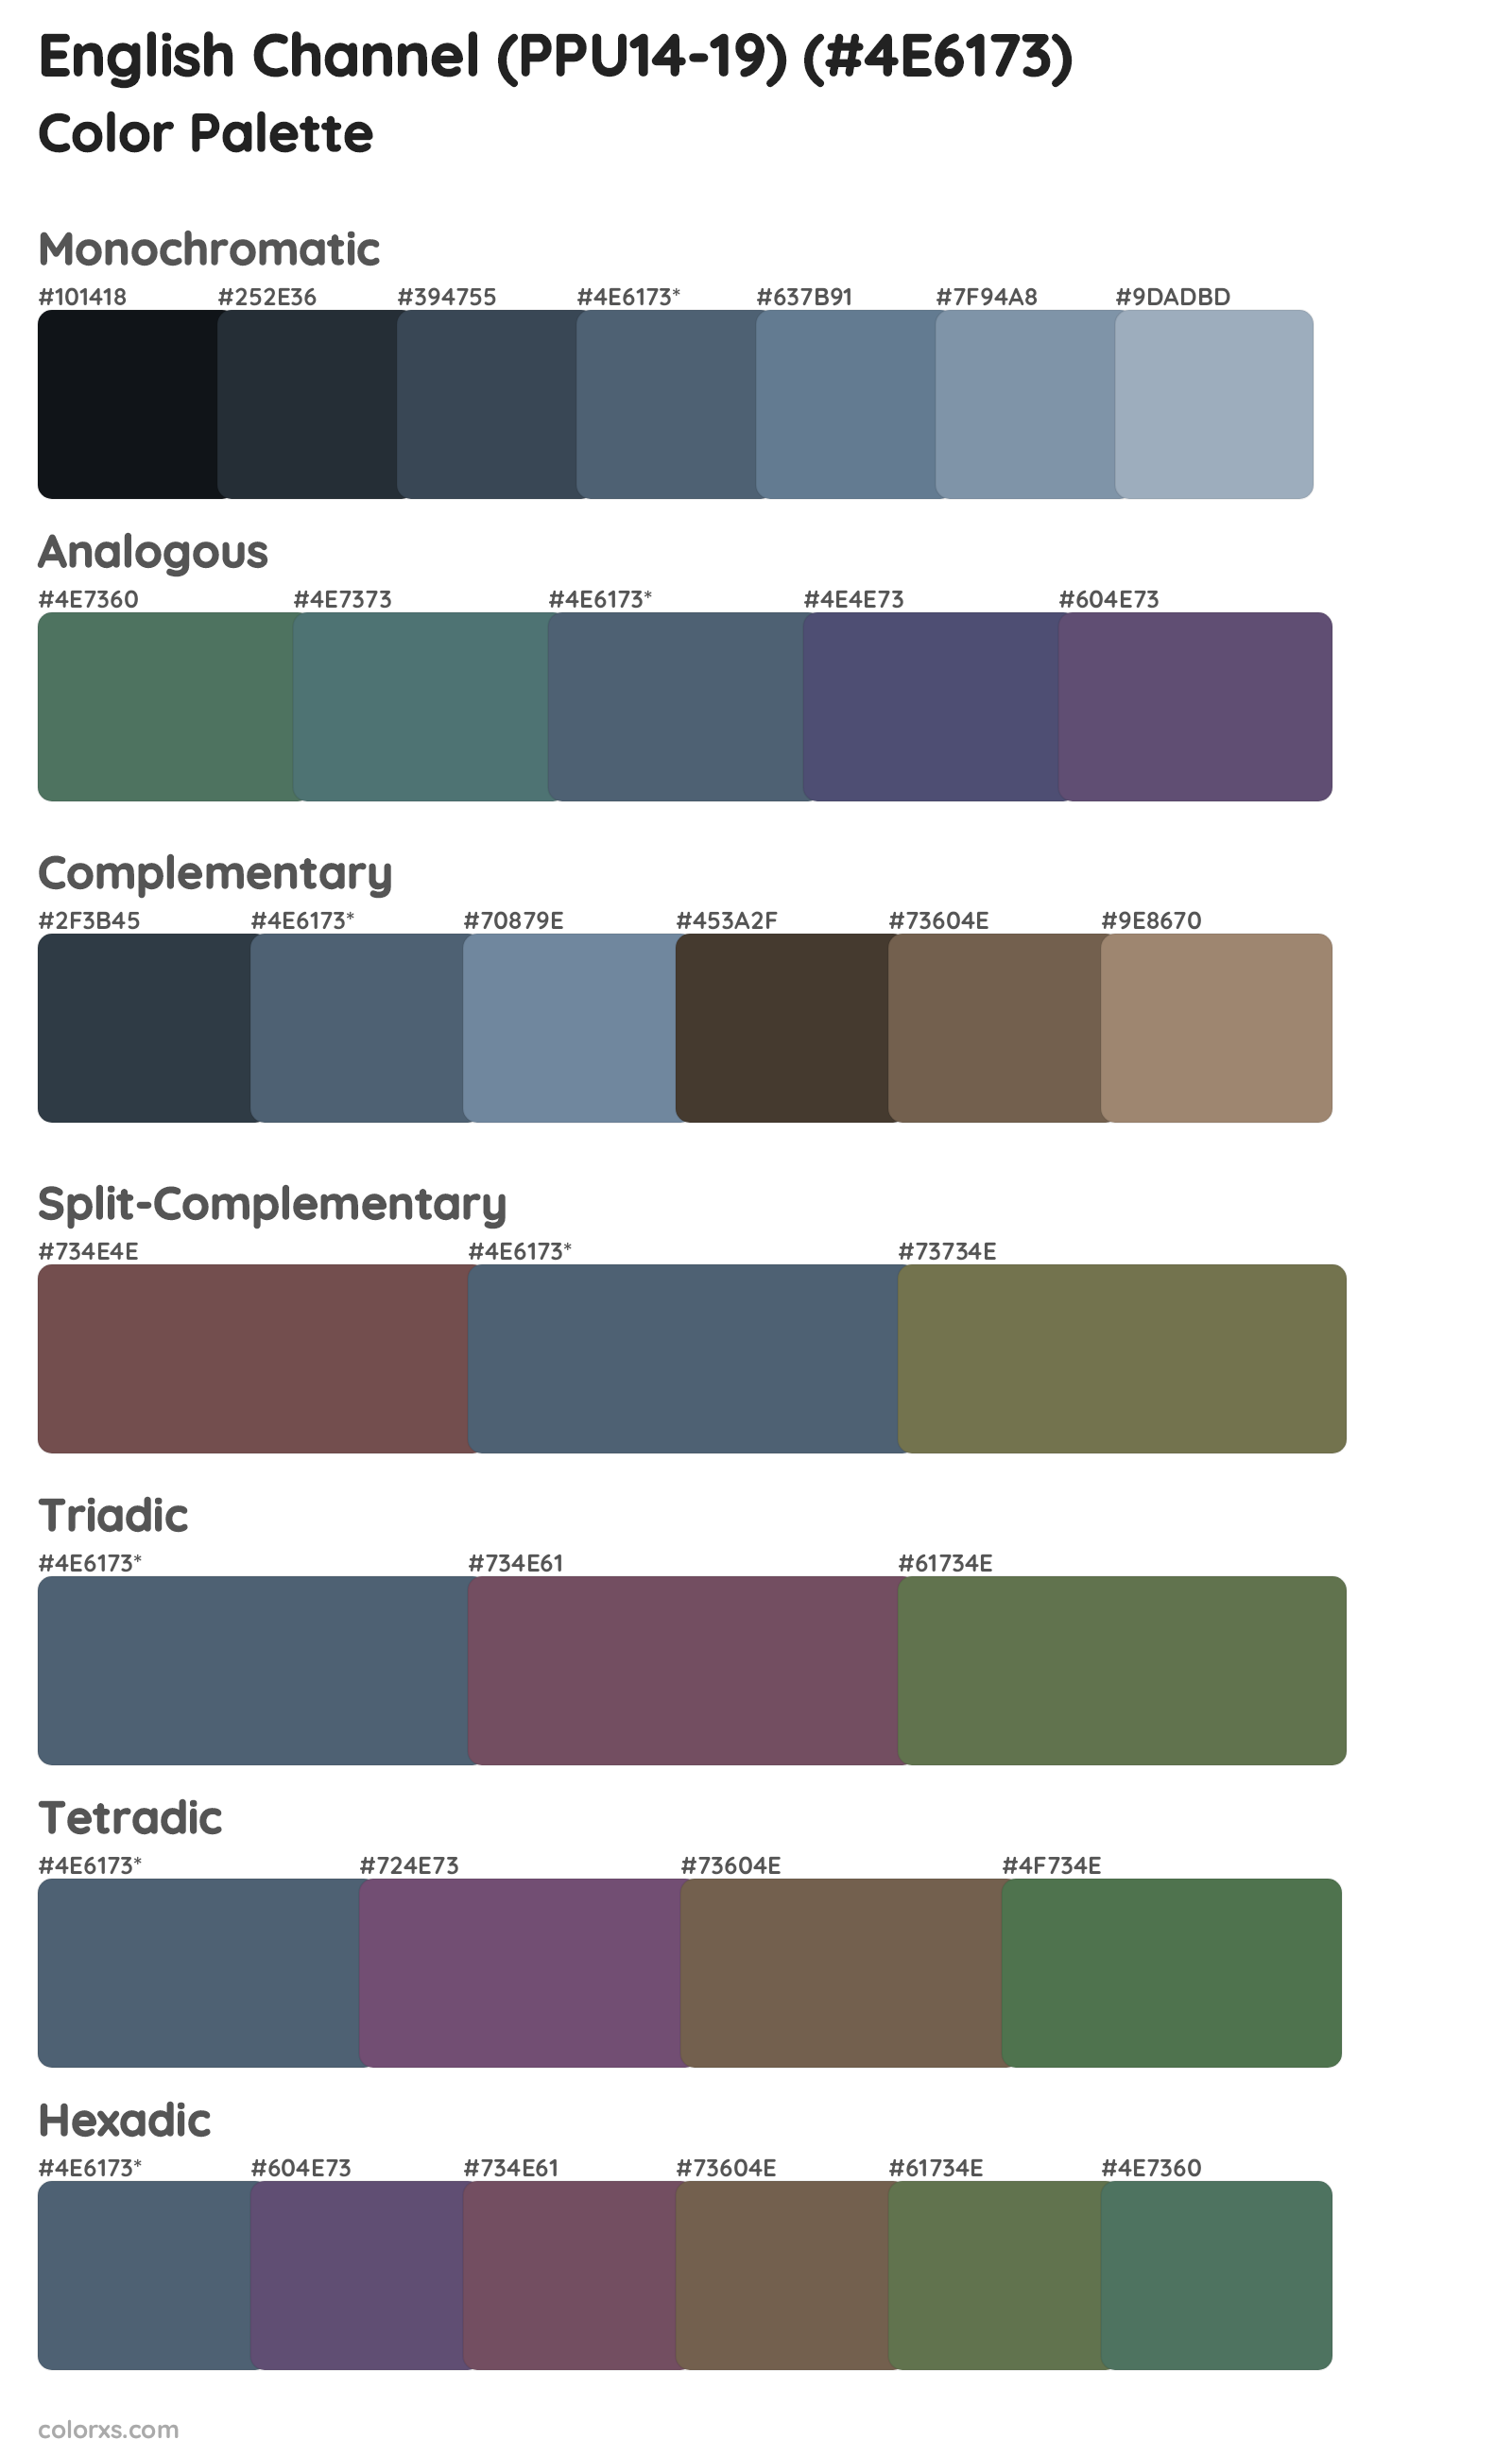 English Channel (PPU14-19) Color Scheme Palettes